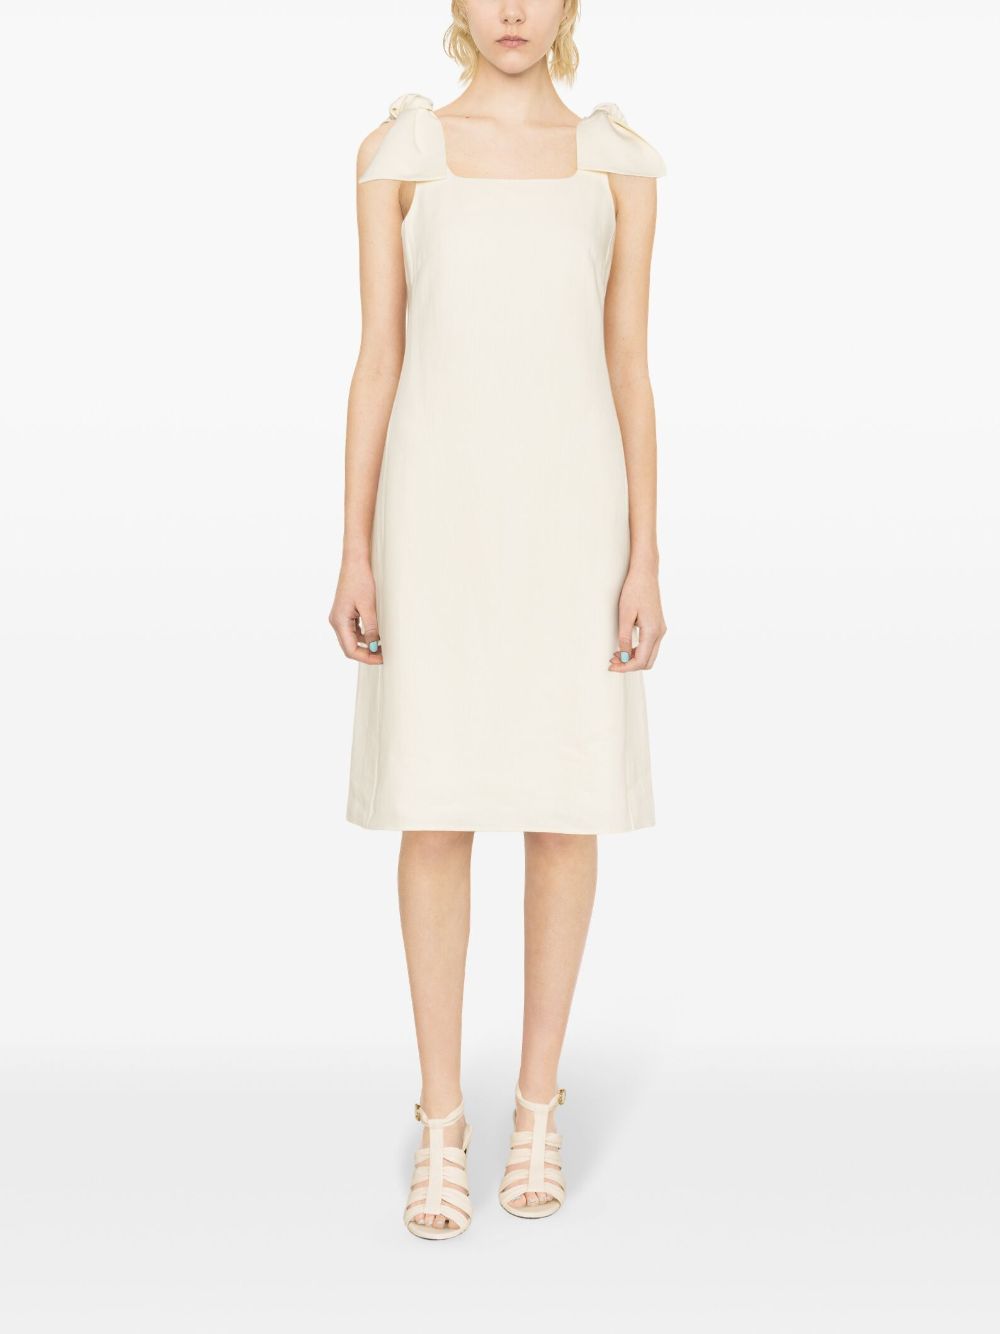 CHLOÉ Elevated Linen Dress for Women in Crisp White